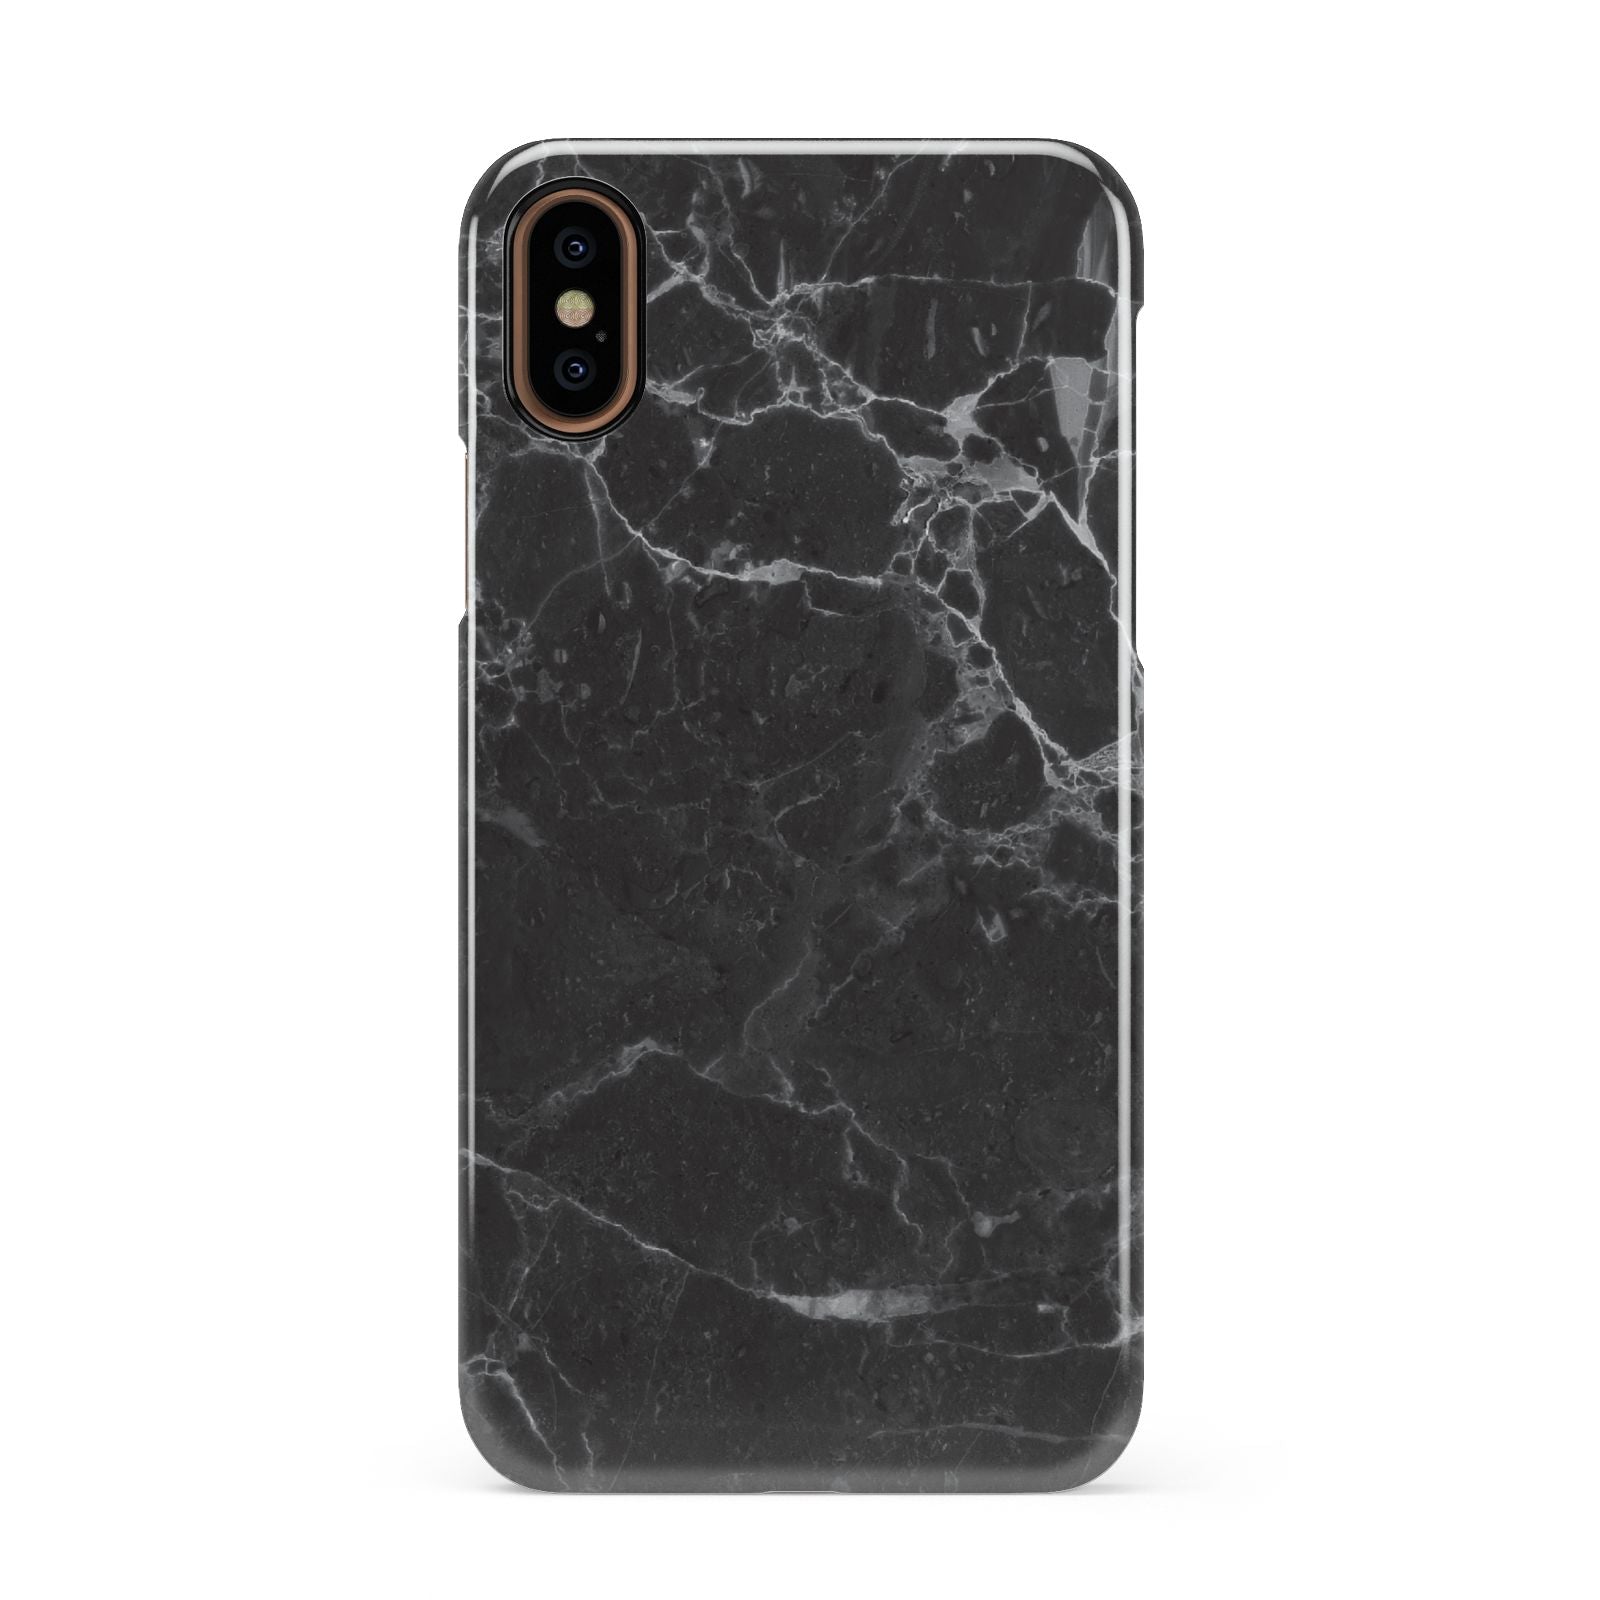 Faux Marble Effect Black Apple iPhone XS 3D Snap Case